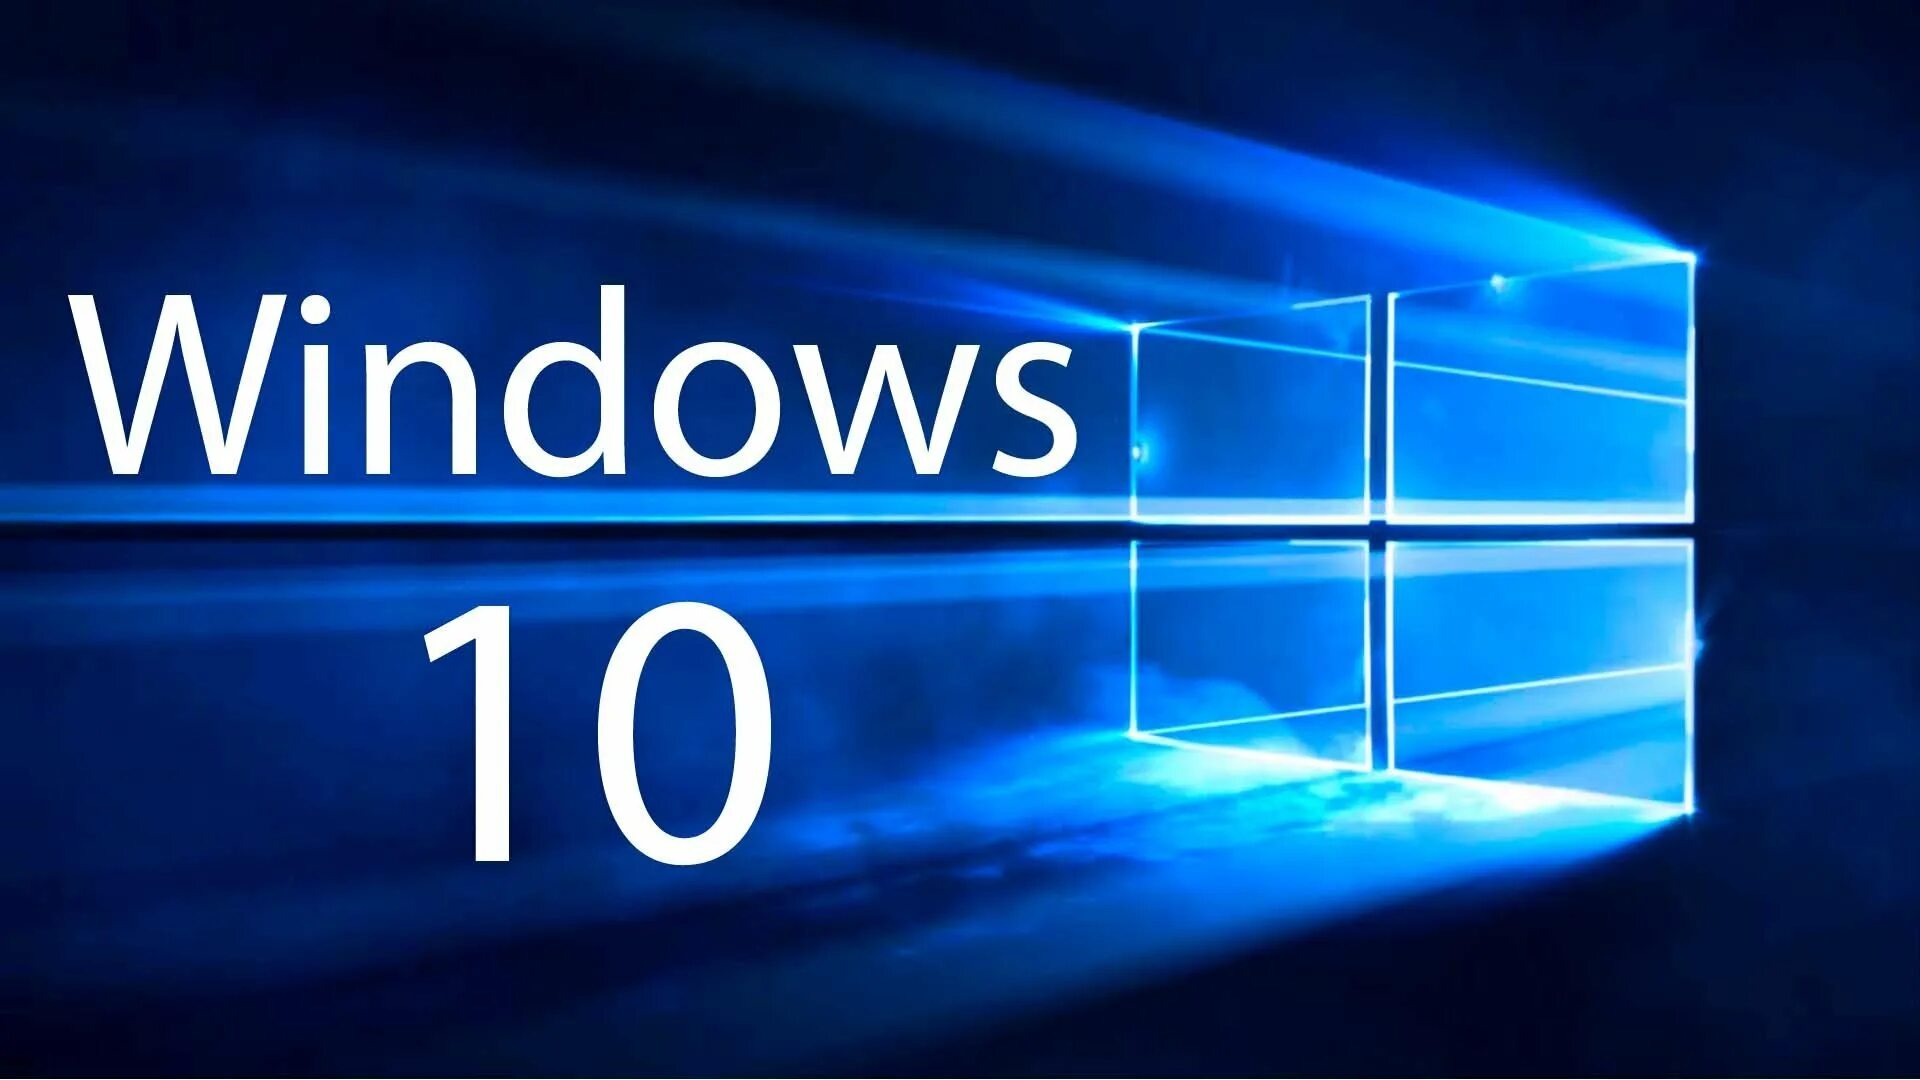 Microsoft Windows 10. ОС виндовс 10. Логотип виндовс 10. Картинки виндовс 10. Производитель windows 10